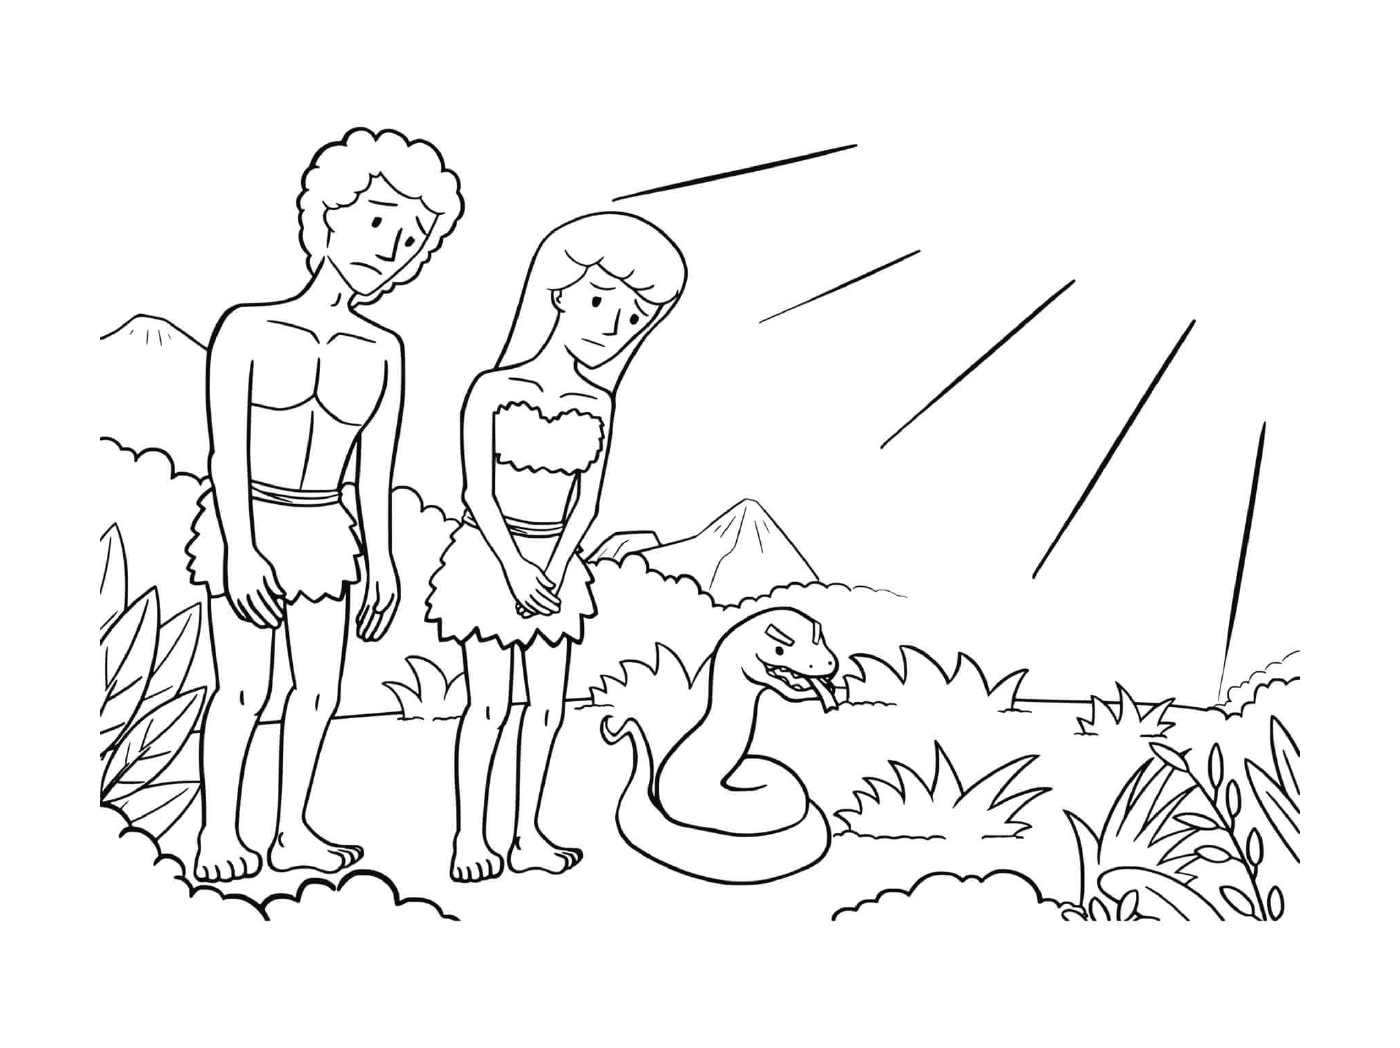  Hombre y mujer de pie junto a una serpiente 